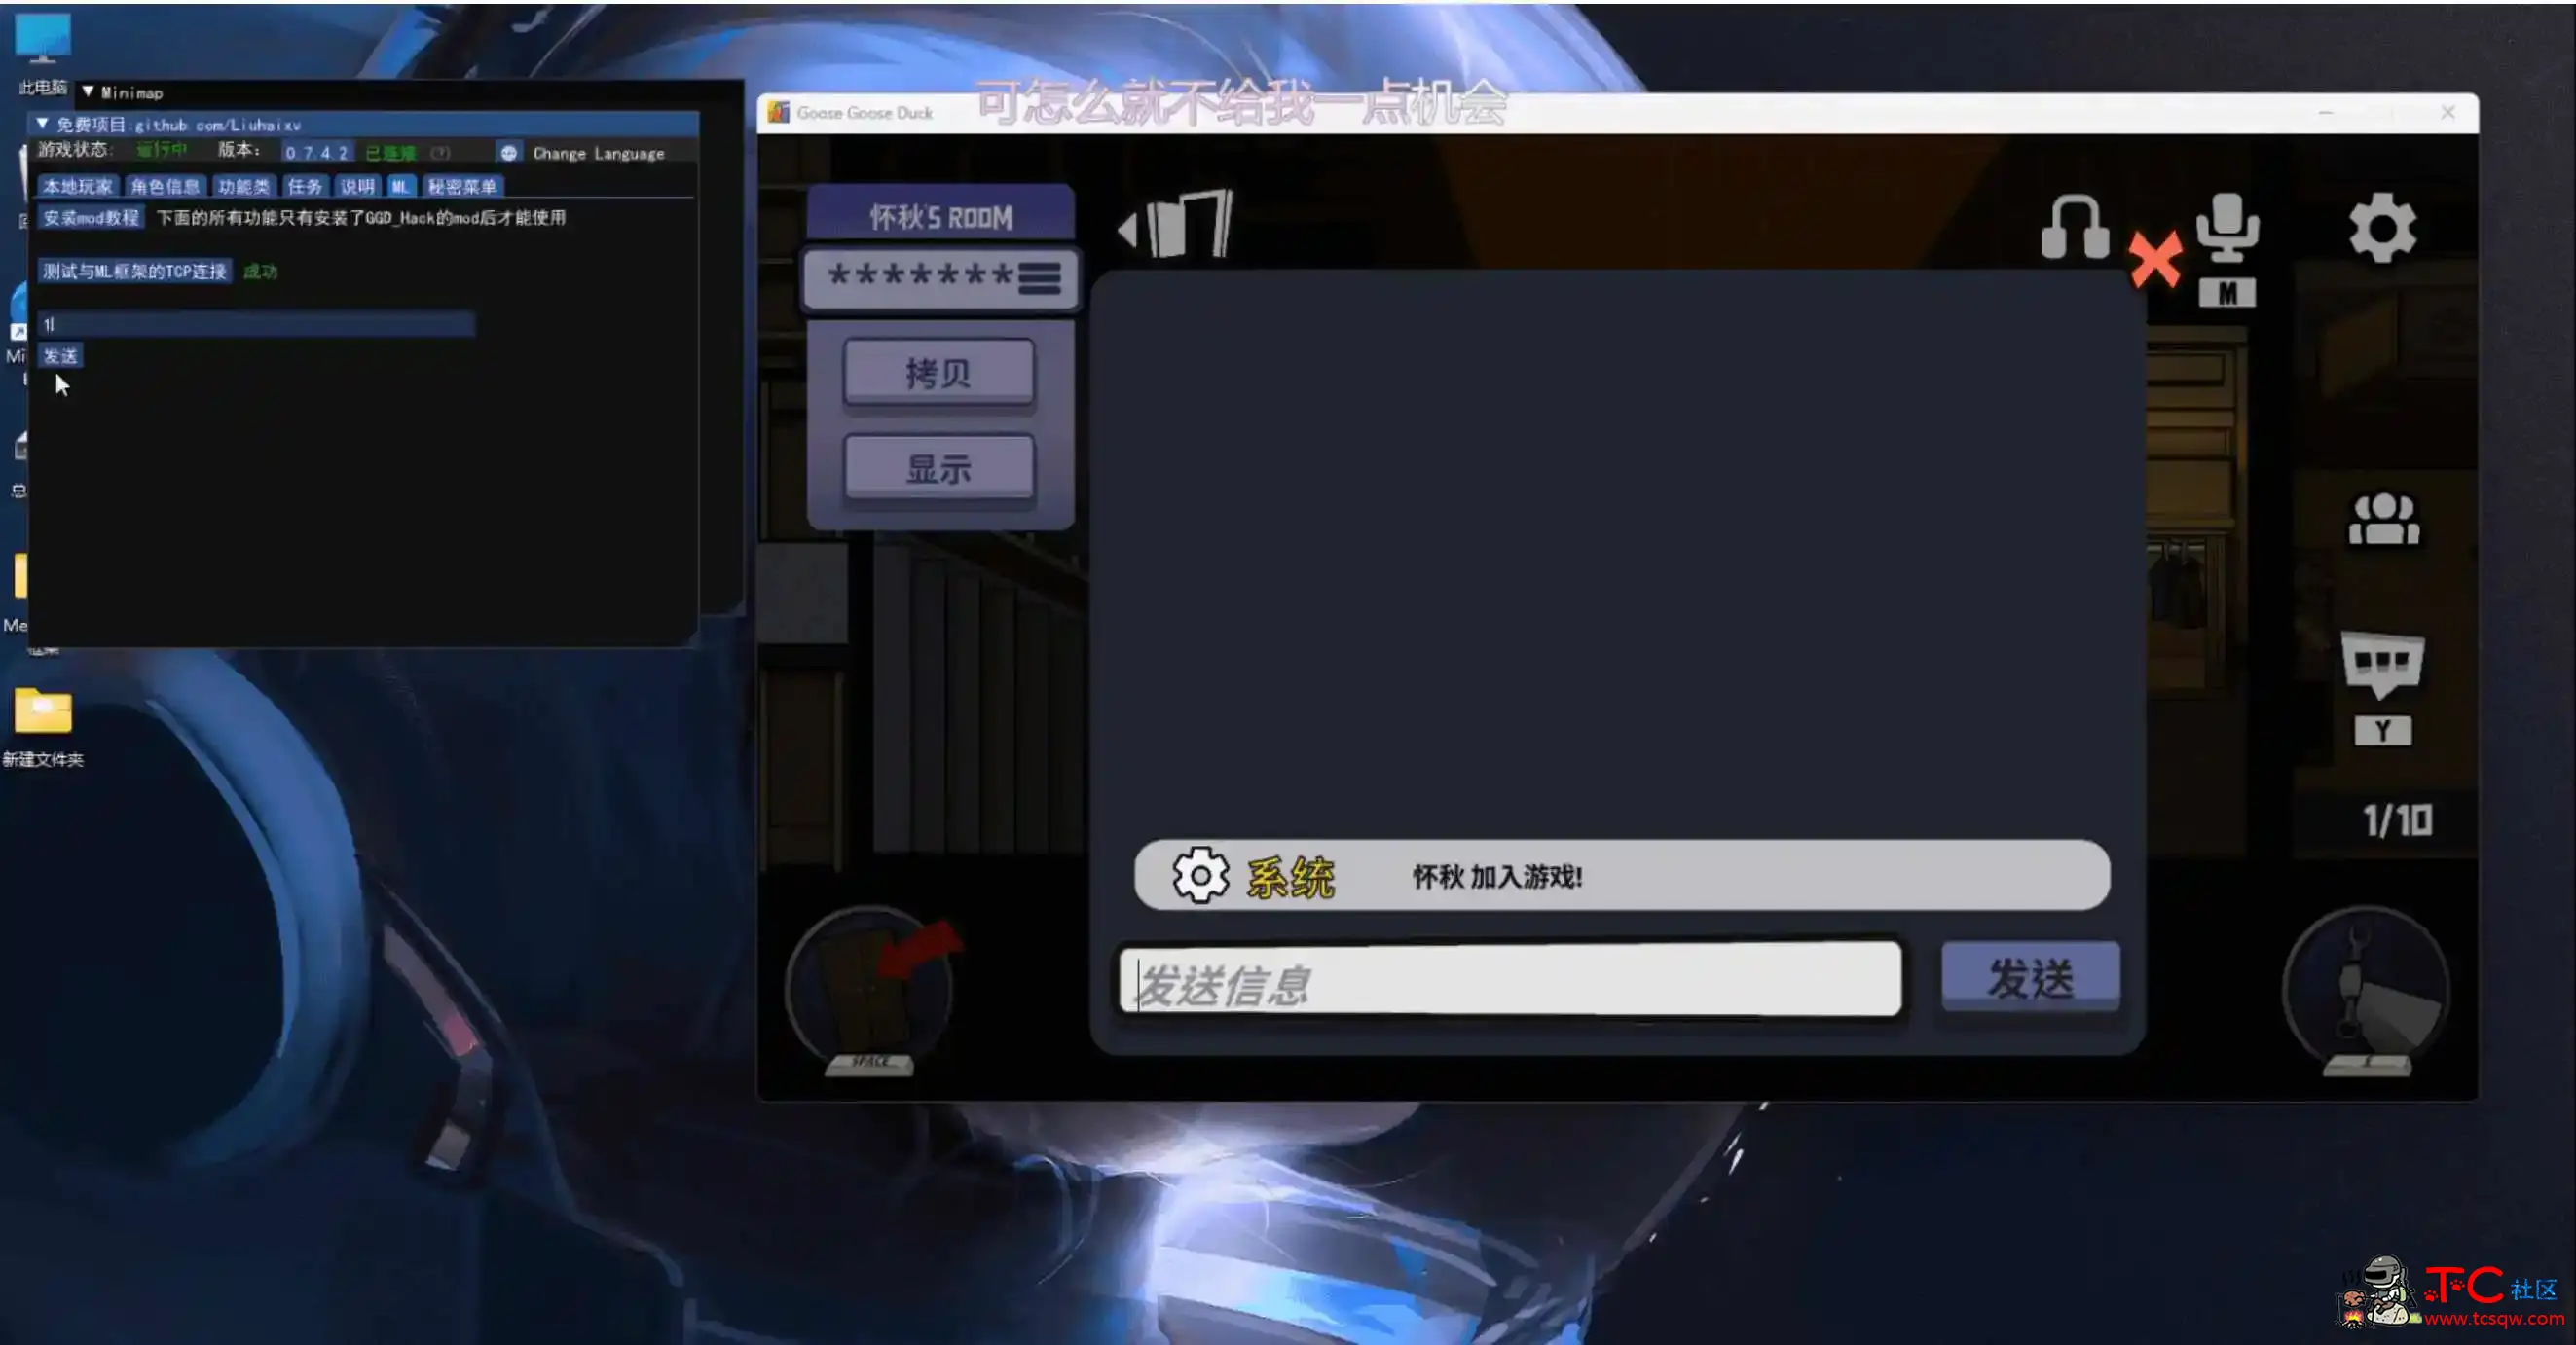 鹅鸭杀Minimp显玩家传送无冷却穿墙多功能辅助v1.5.1 屠城辅助网www.tcfz1.com3133